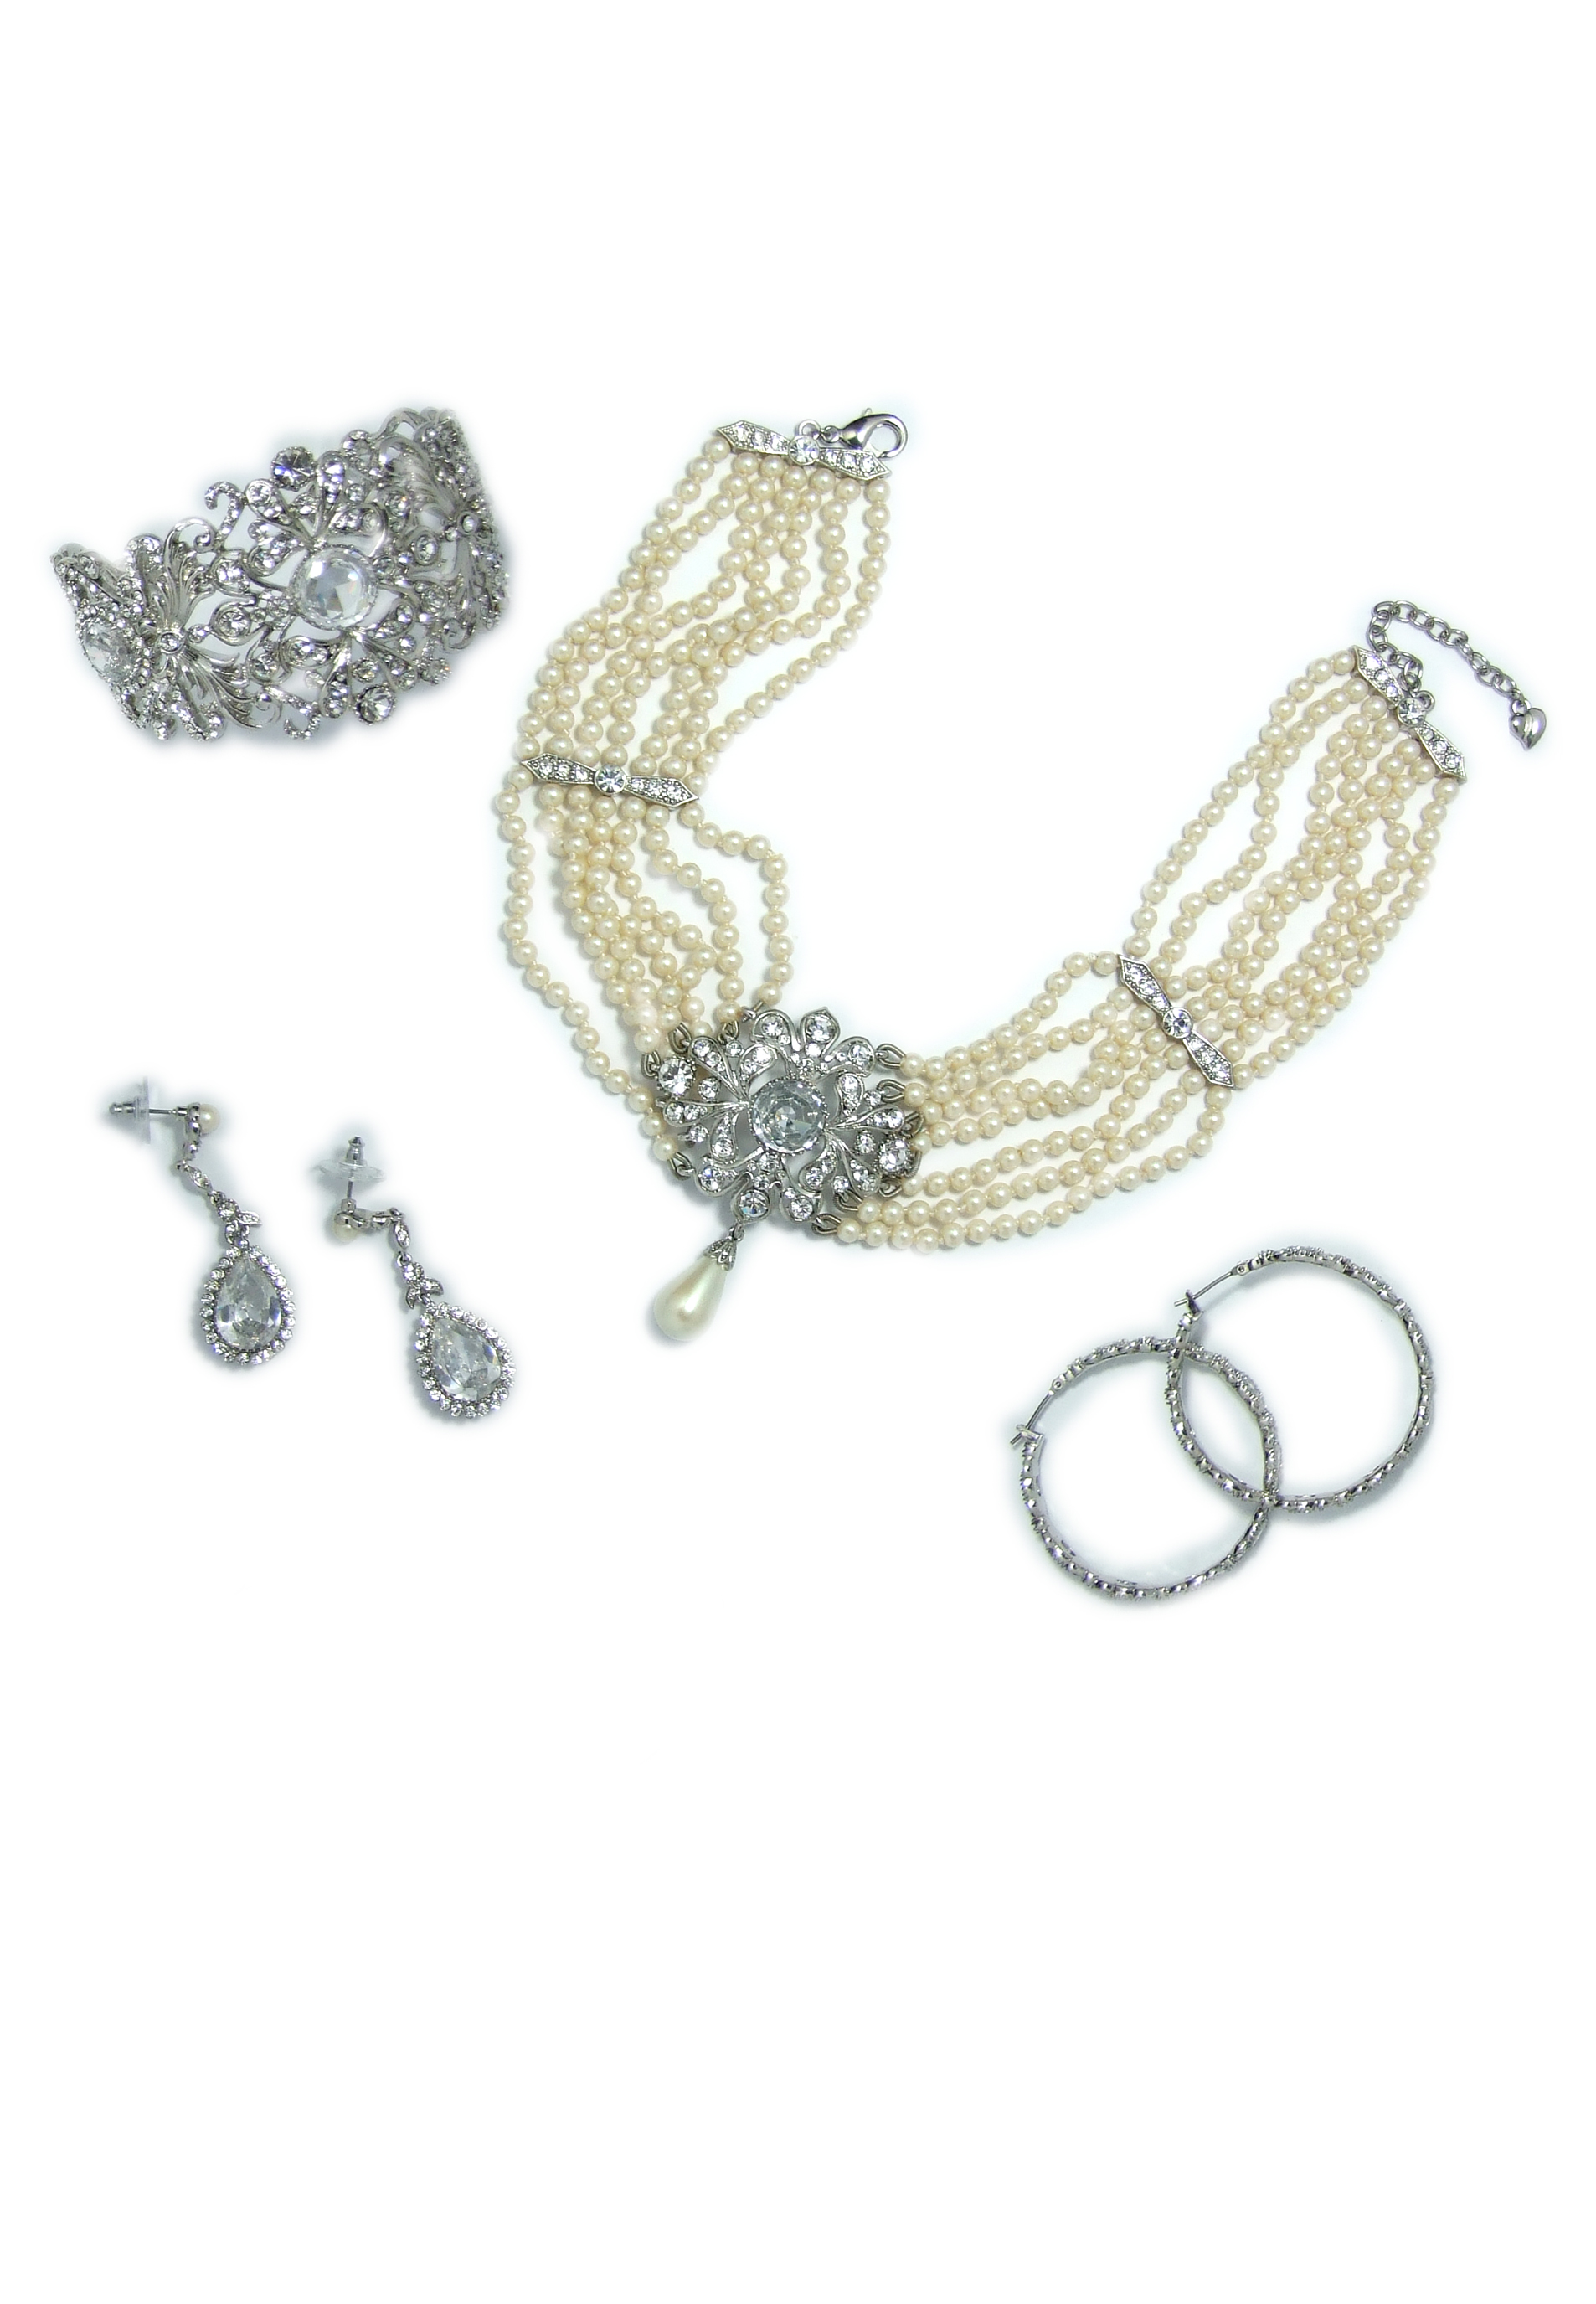 Pearl bridal necklace, bracelet & earrings